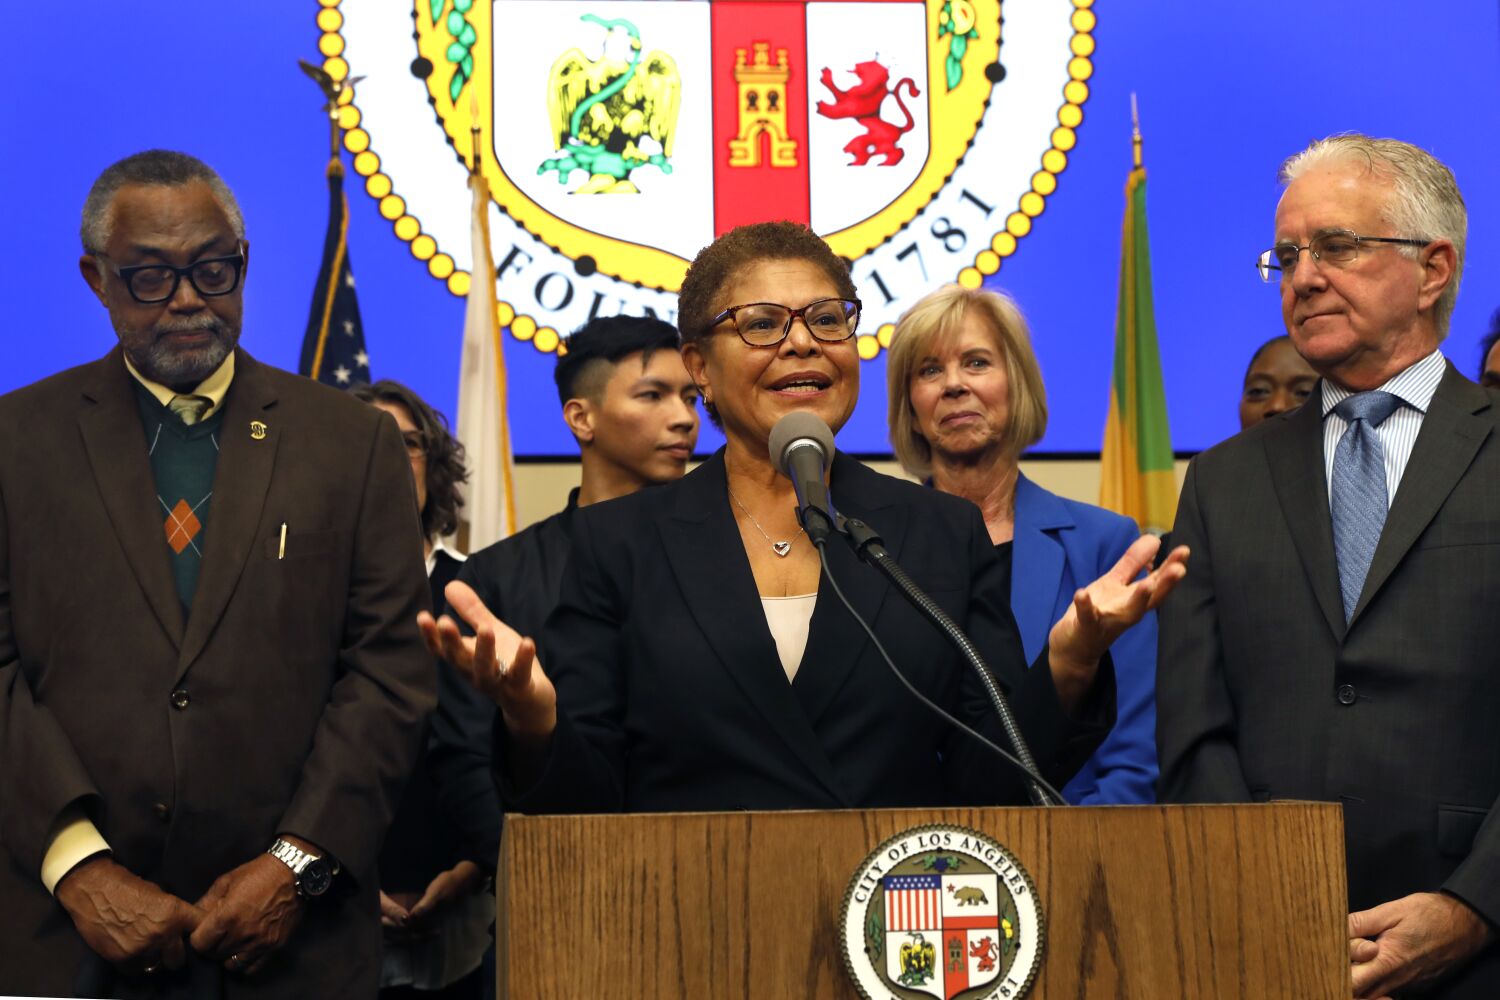 L.A. Mayor Karen Bass: 'The city is demanding the tents go away'